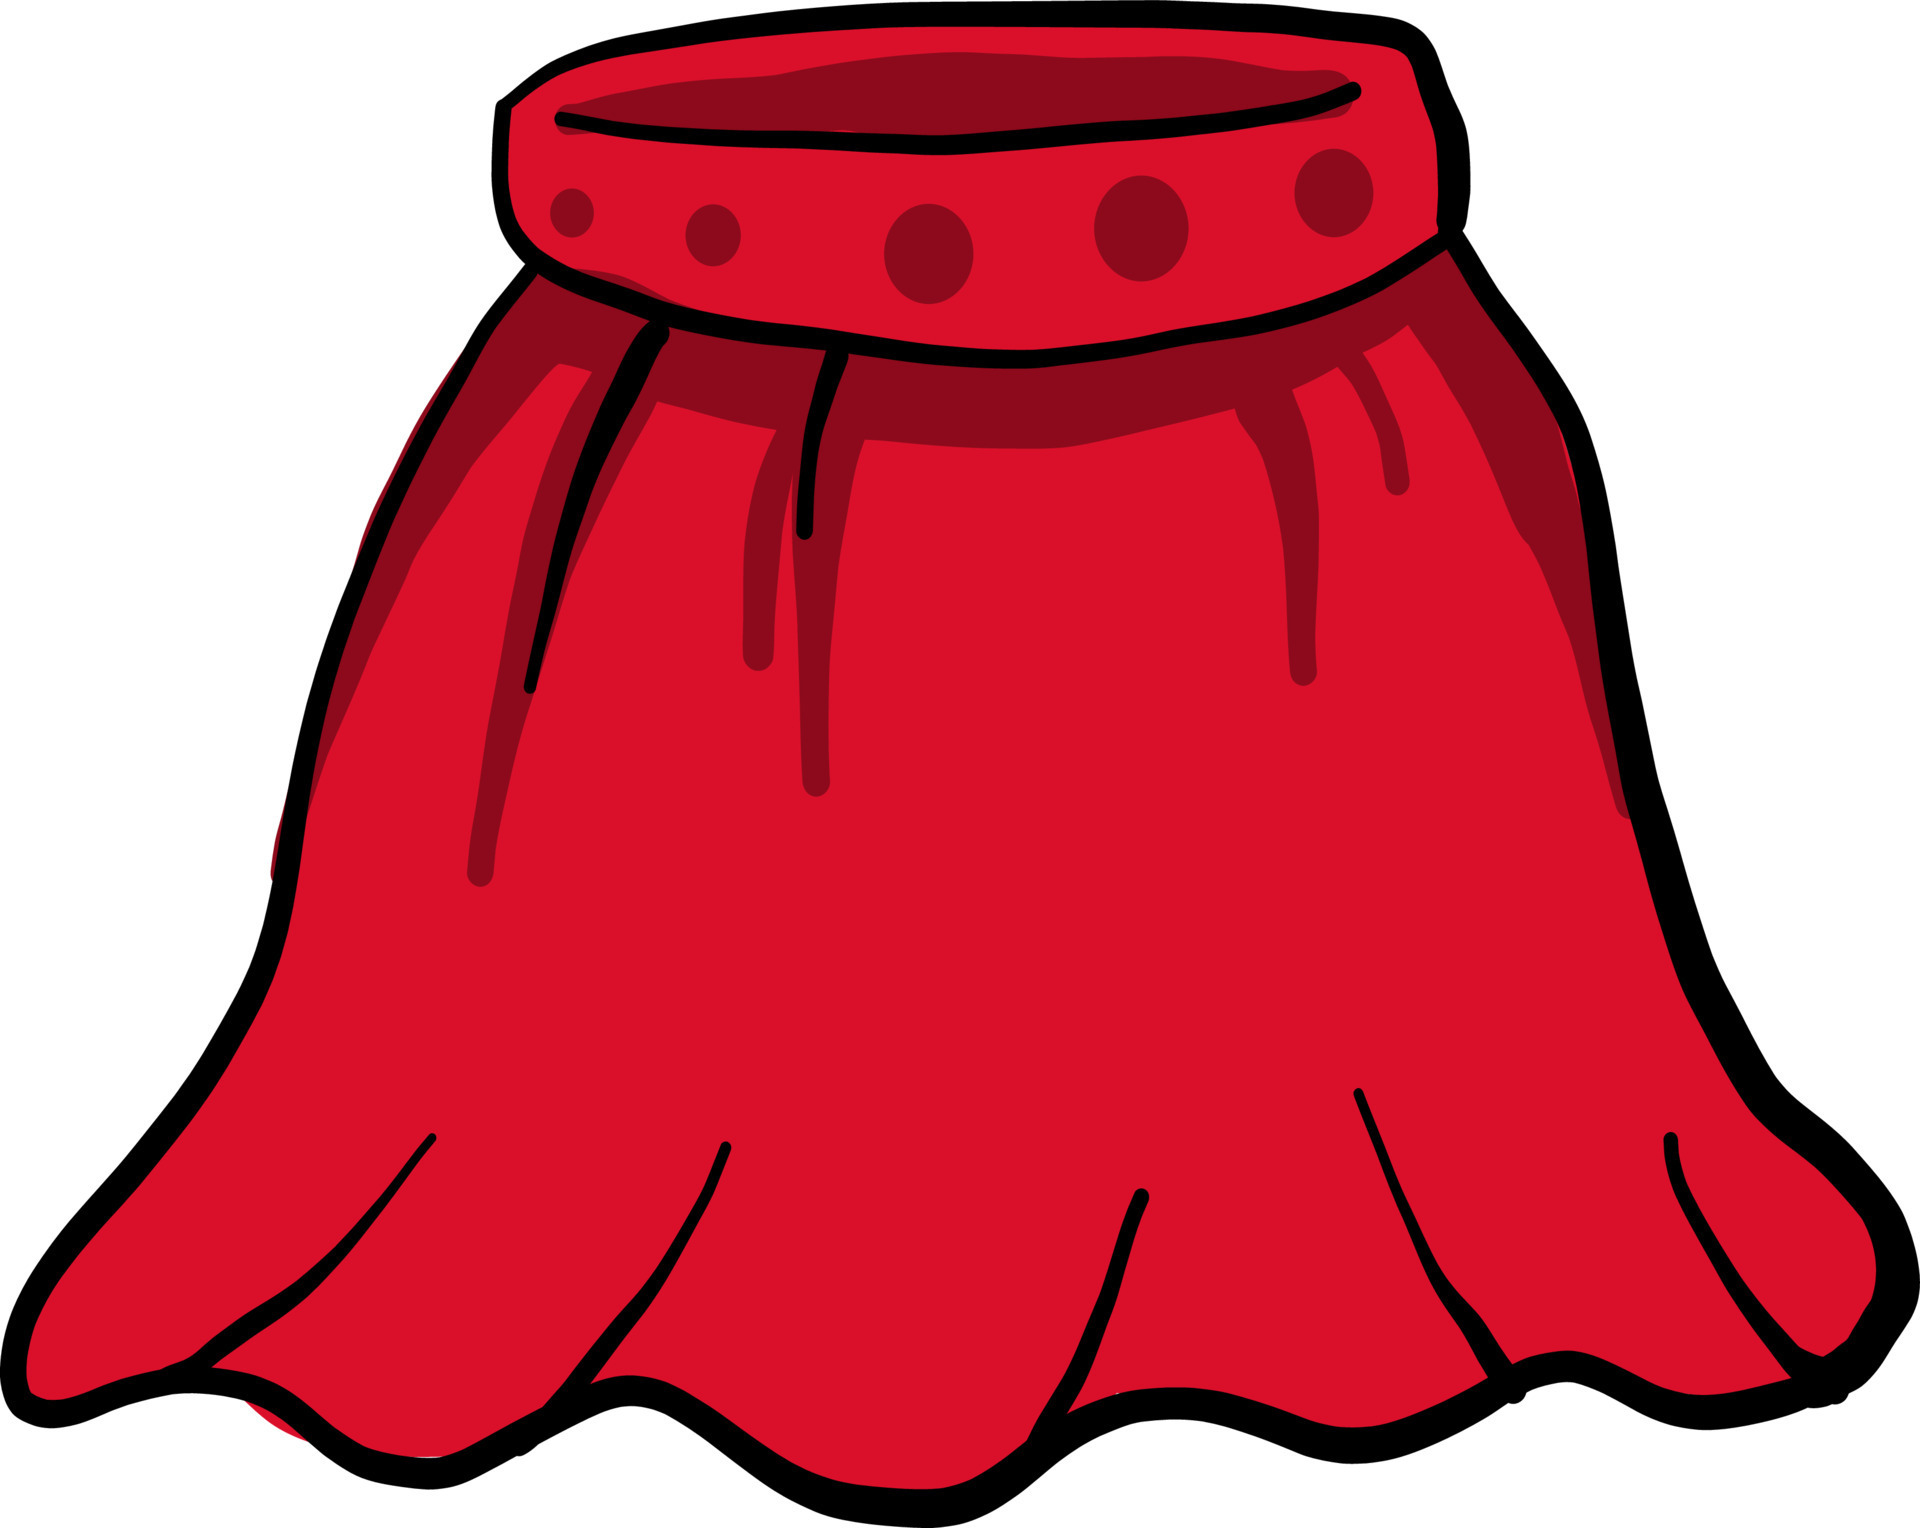 Red crazy skirt, illustration, vector on white background 13509712 ...